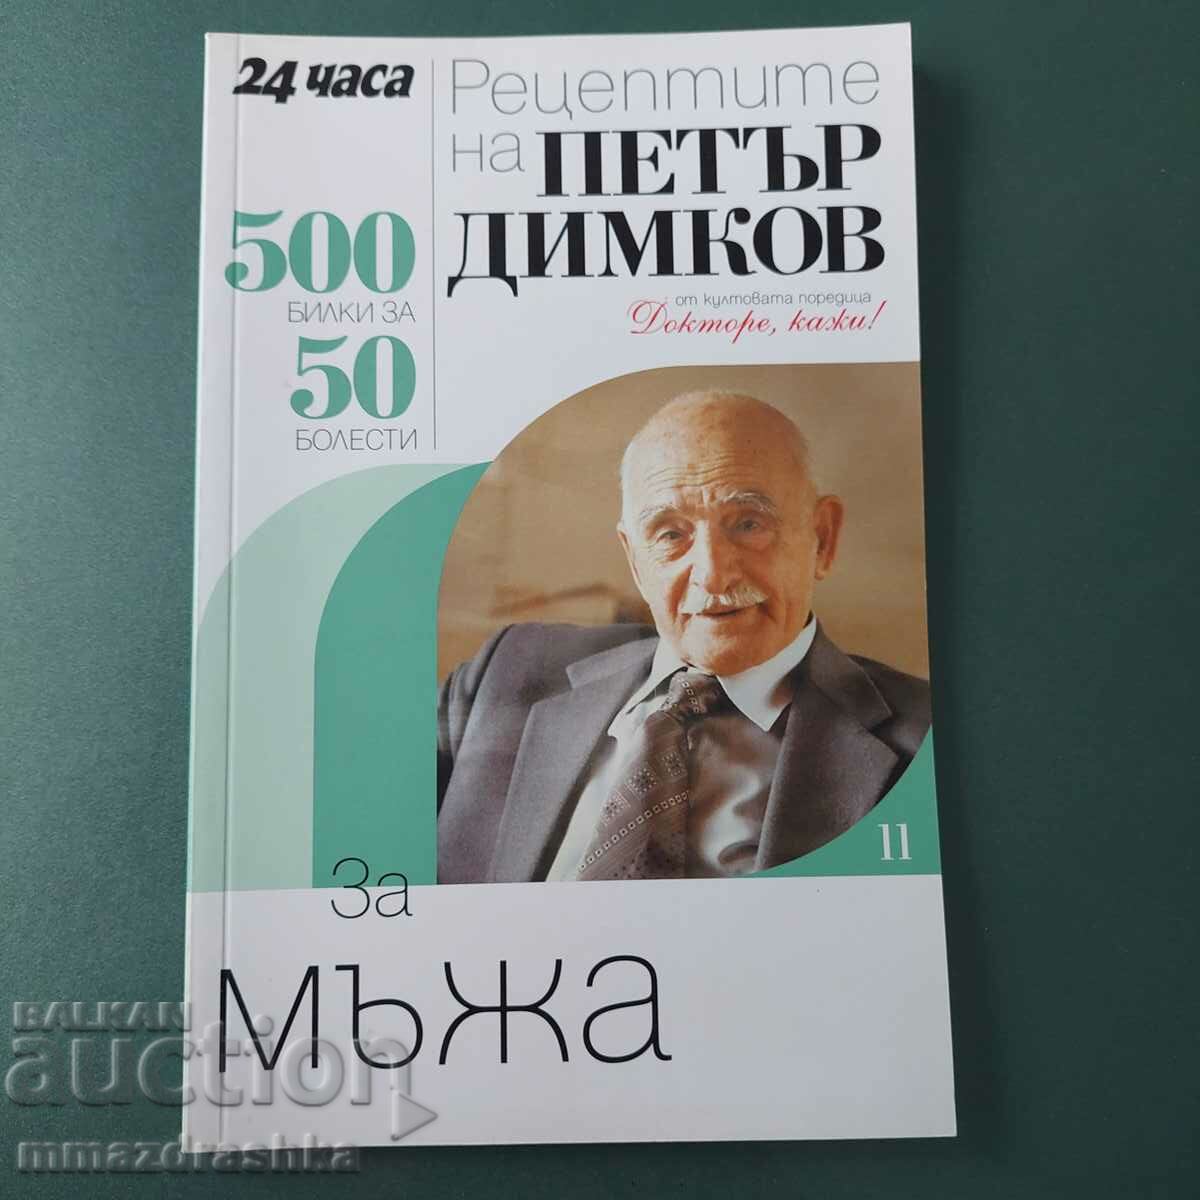 500 рецепти за мъжа, Петър Димков